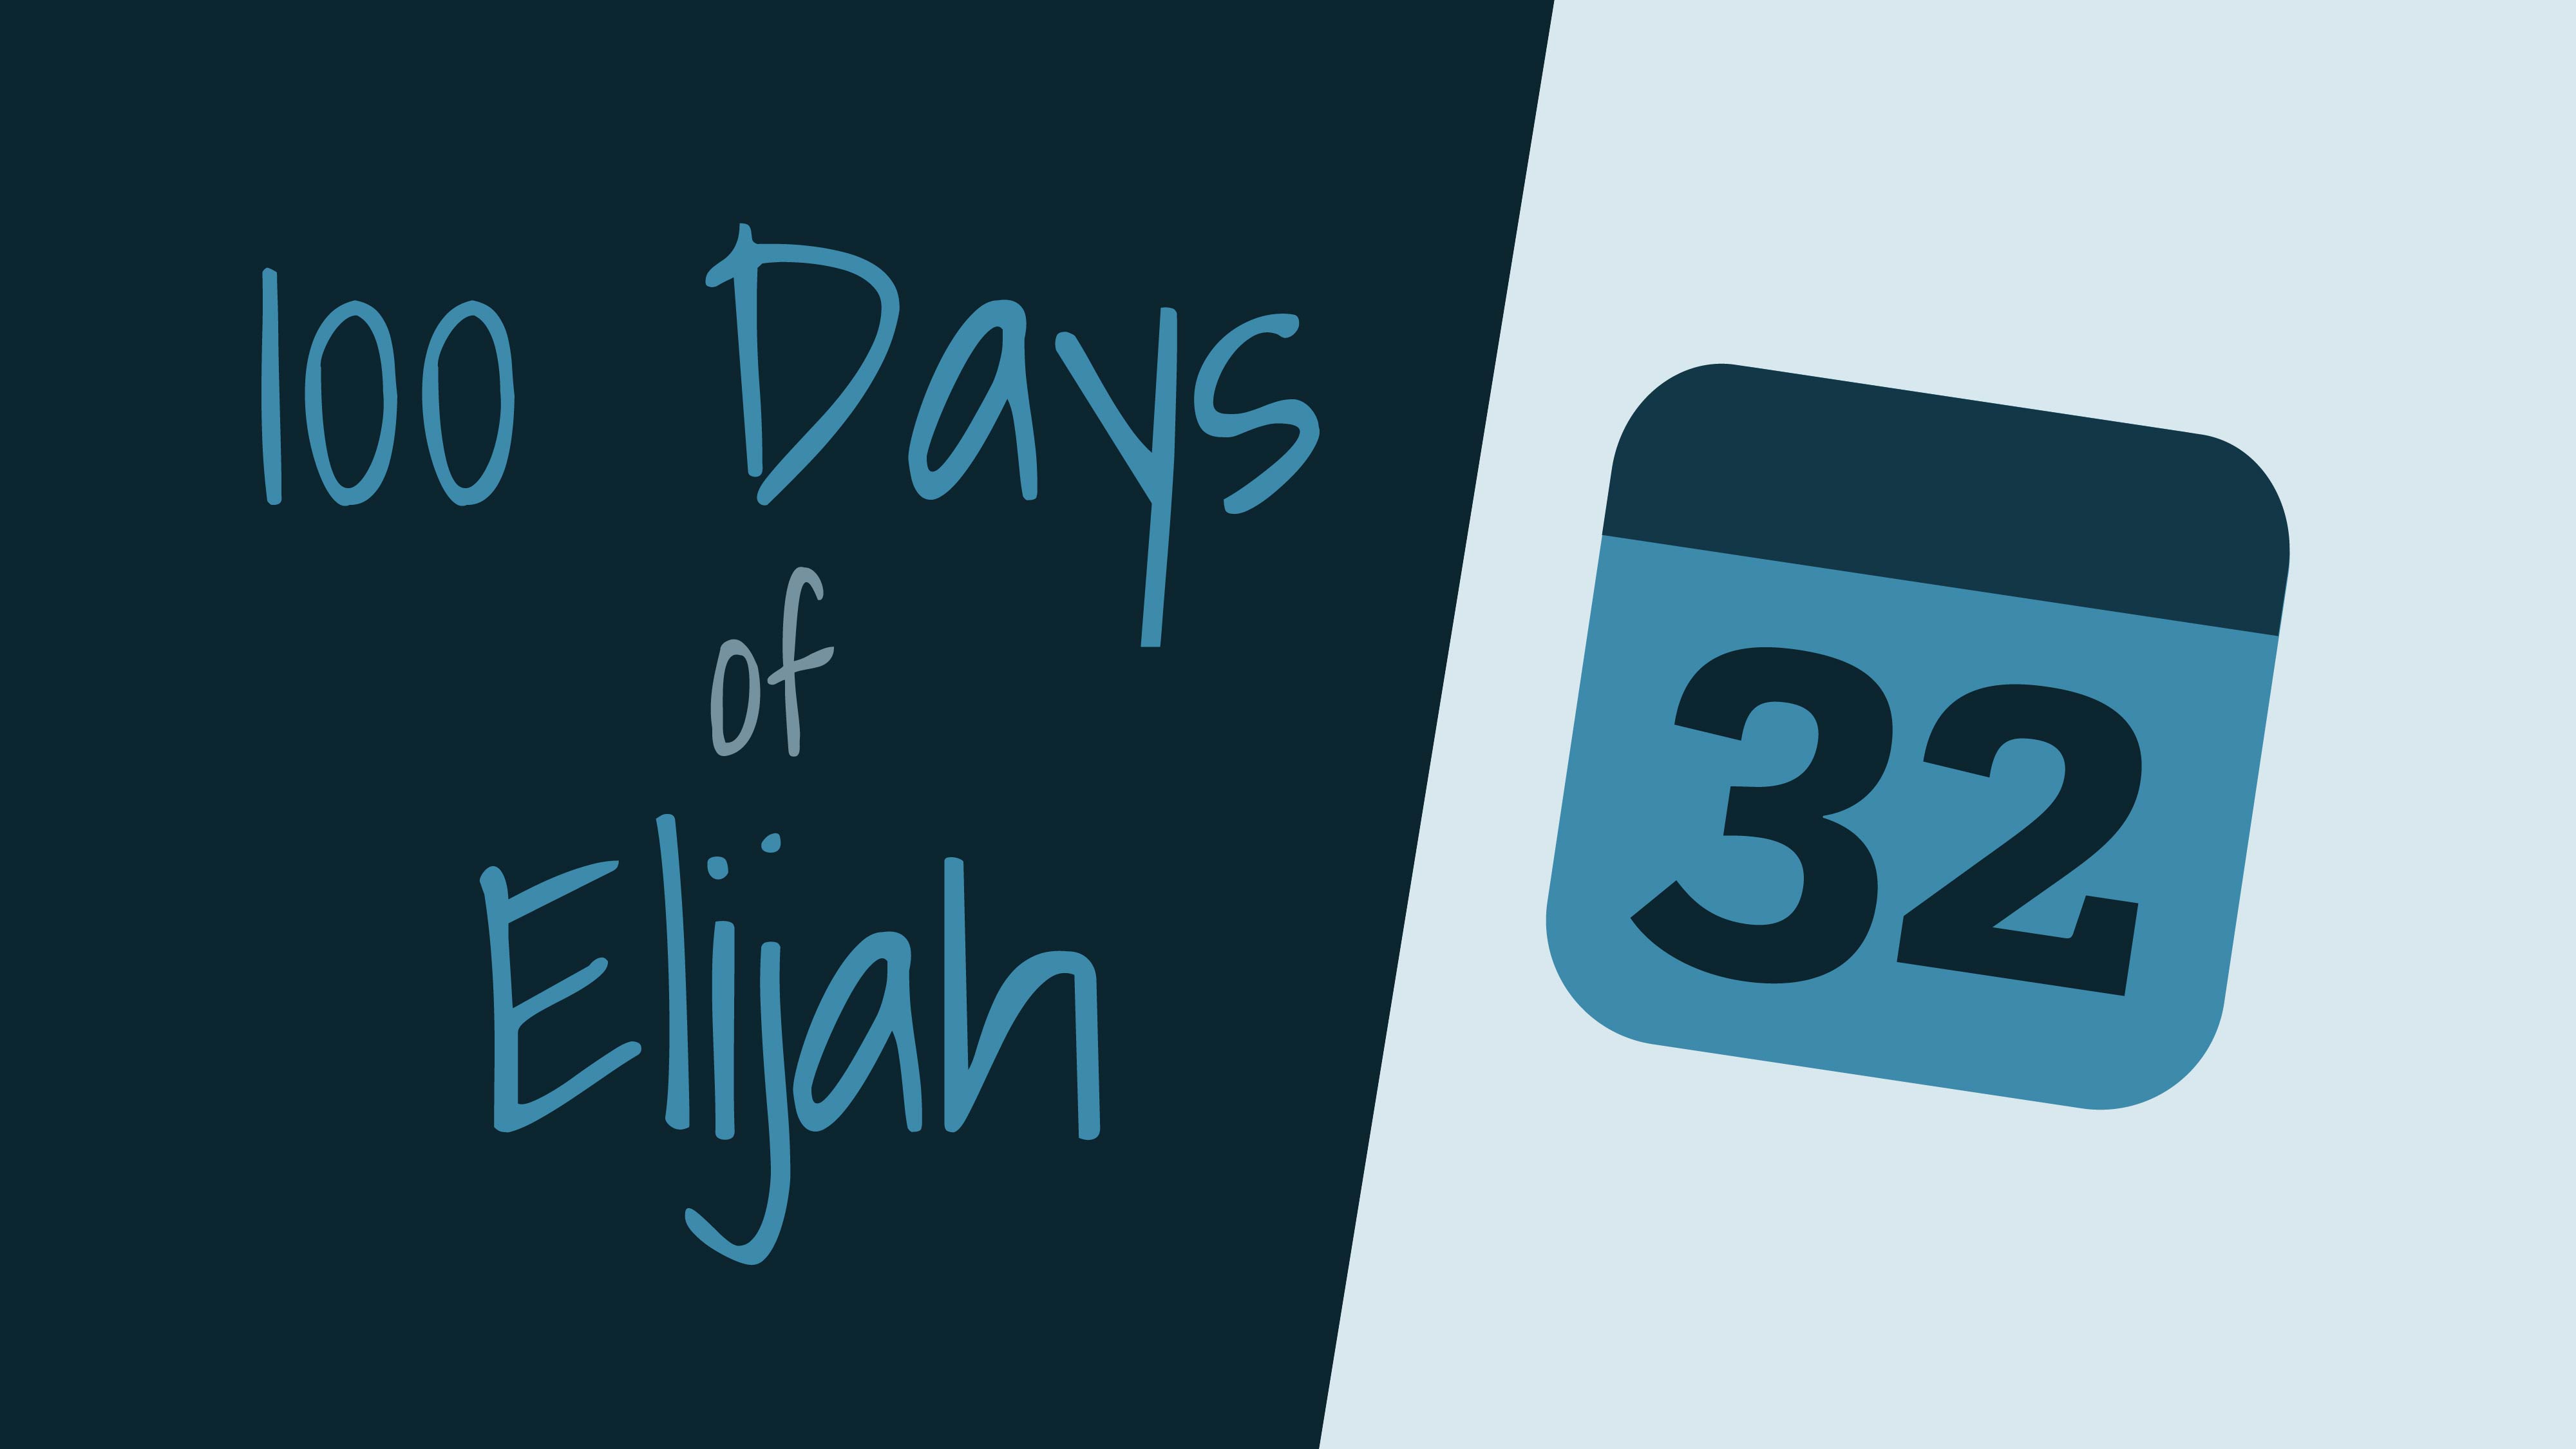 100 Days of Elijah: Day 32